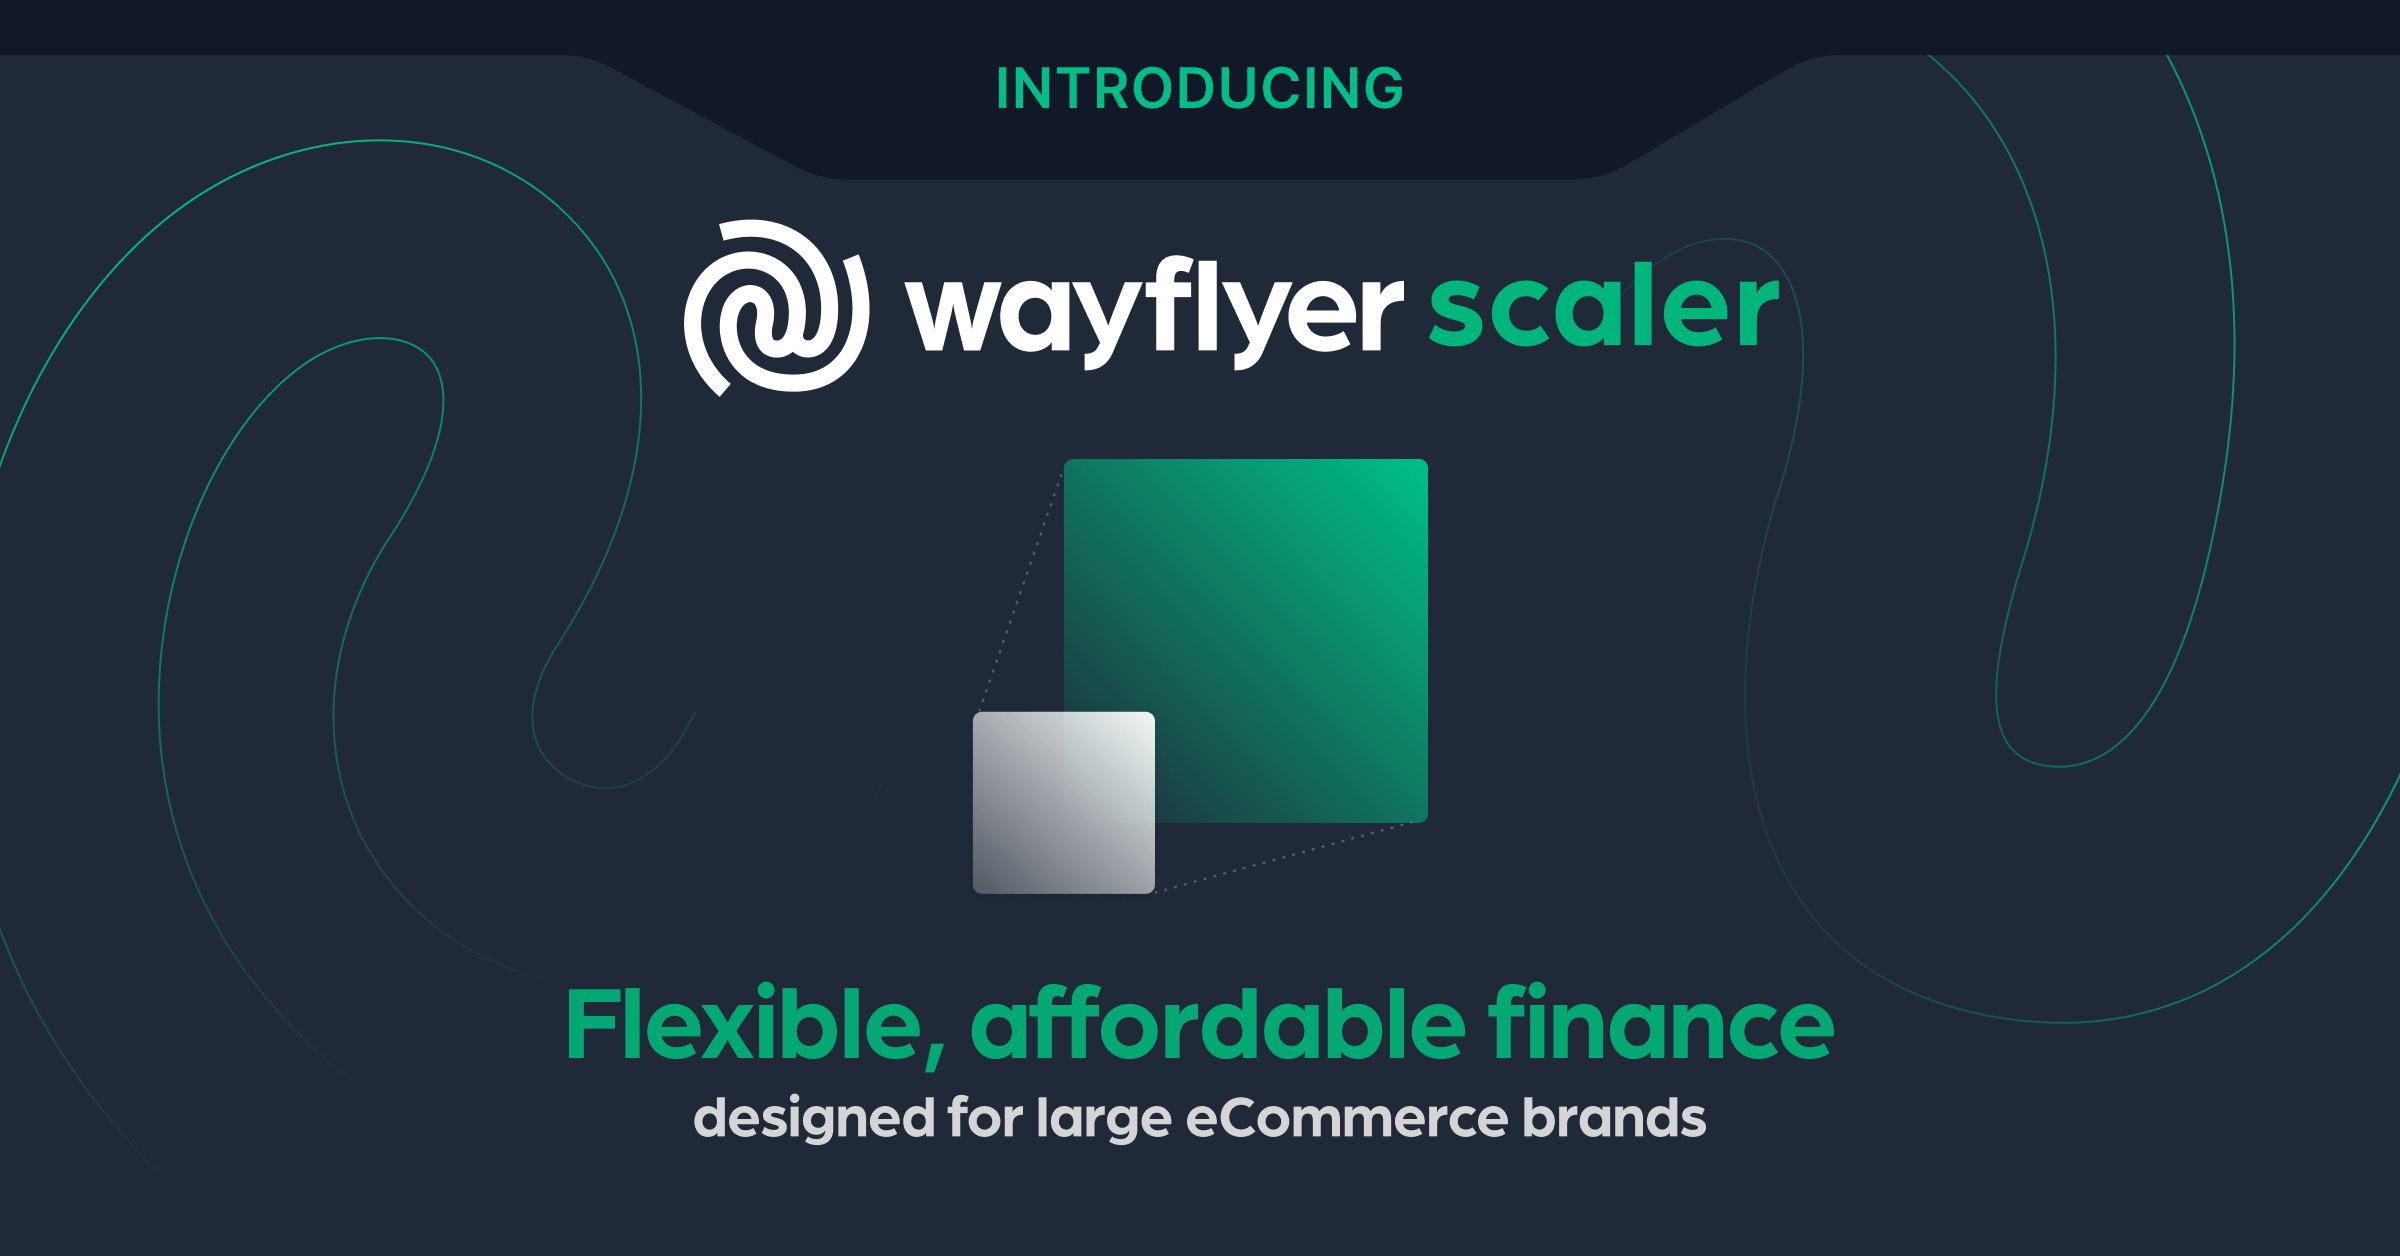 Anunciamos Wayflyer Scaler: nuestra nueva oferta para ayudar a resolver los desafíos de capital de trabajo de las grandes empresas de comercio electrónico